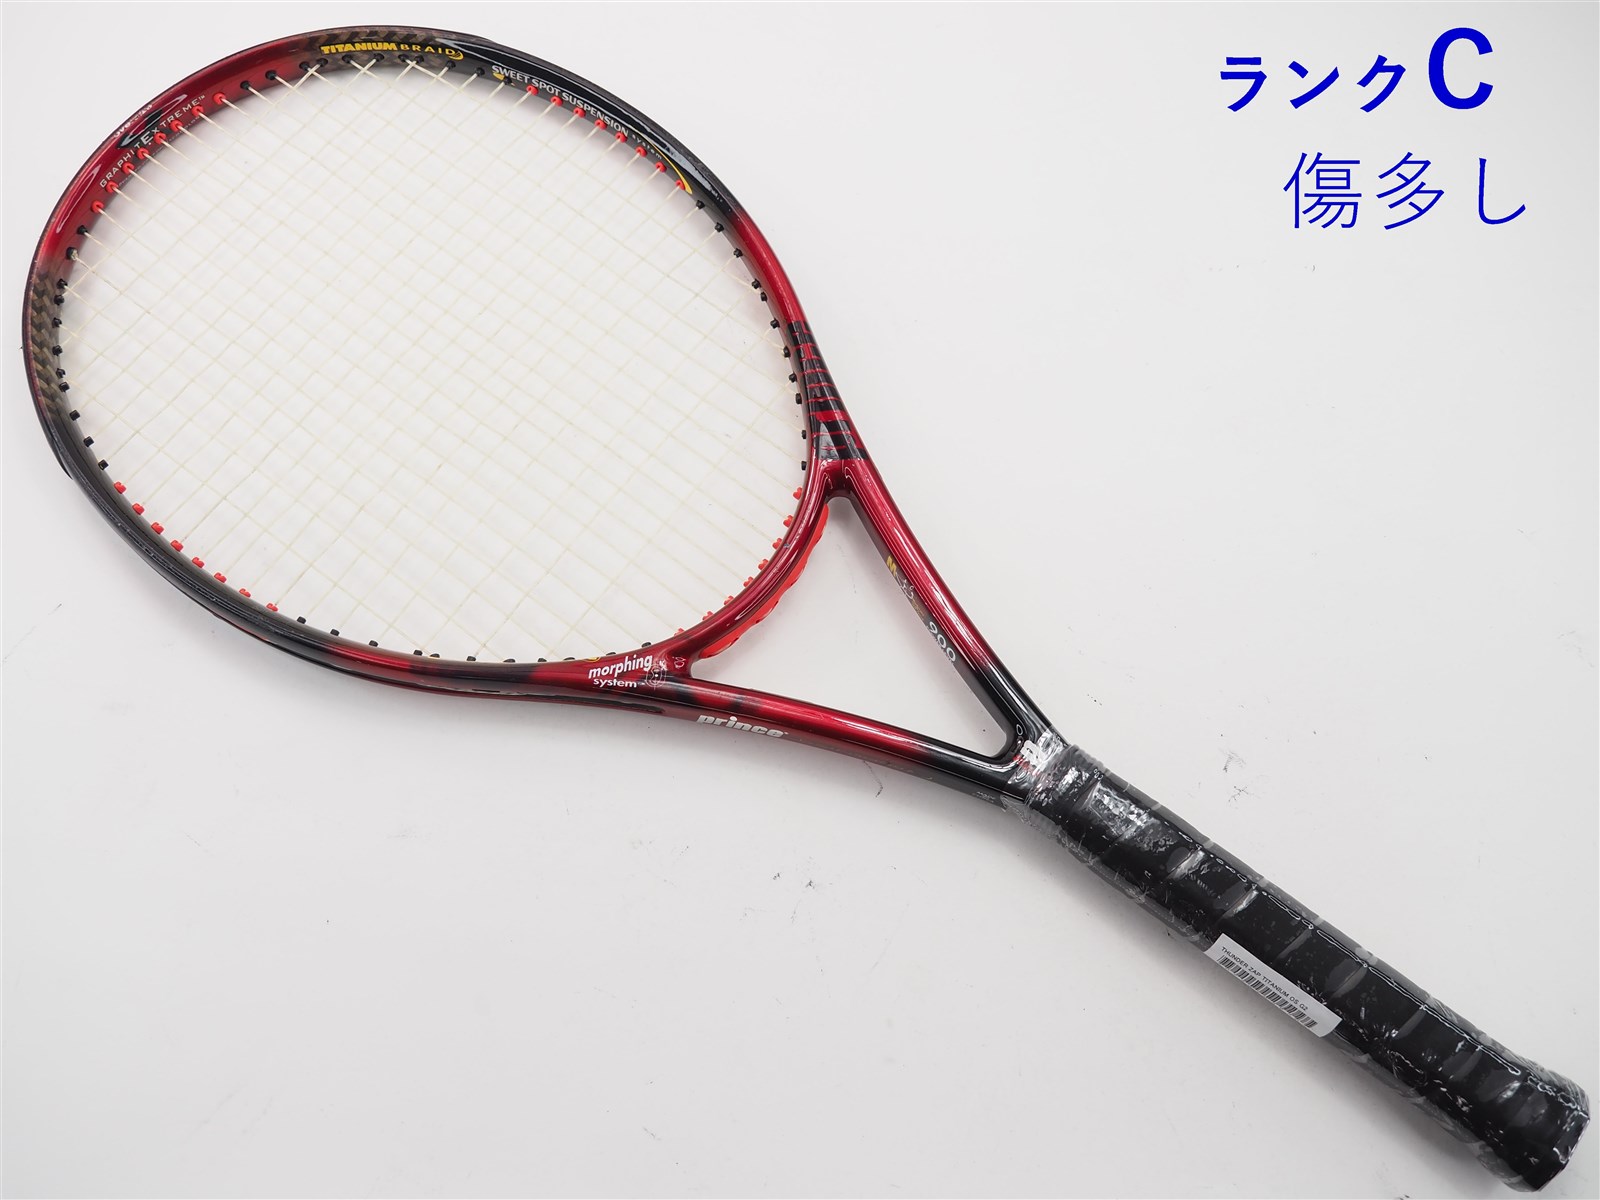 テニスラケット プリンス モア サンダー OS (G2)PRINCE MORE THUNDER OS115平方インチ長さ